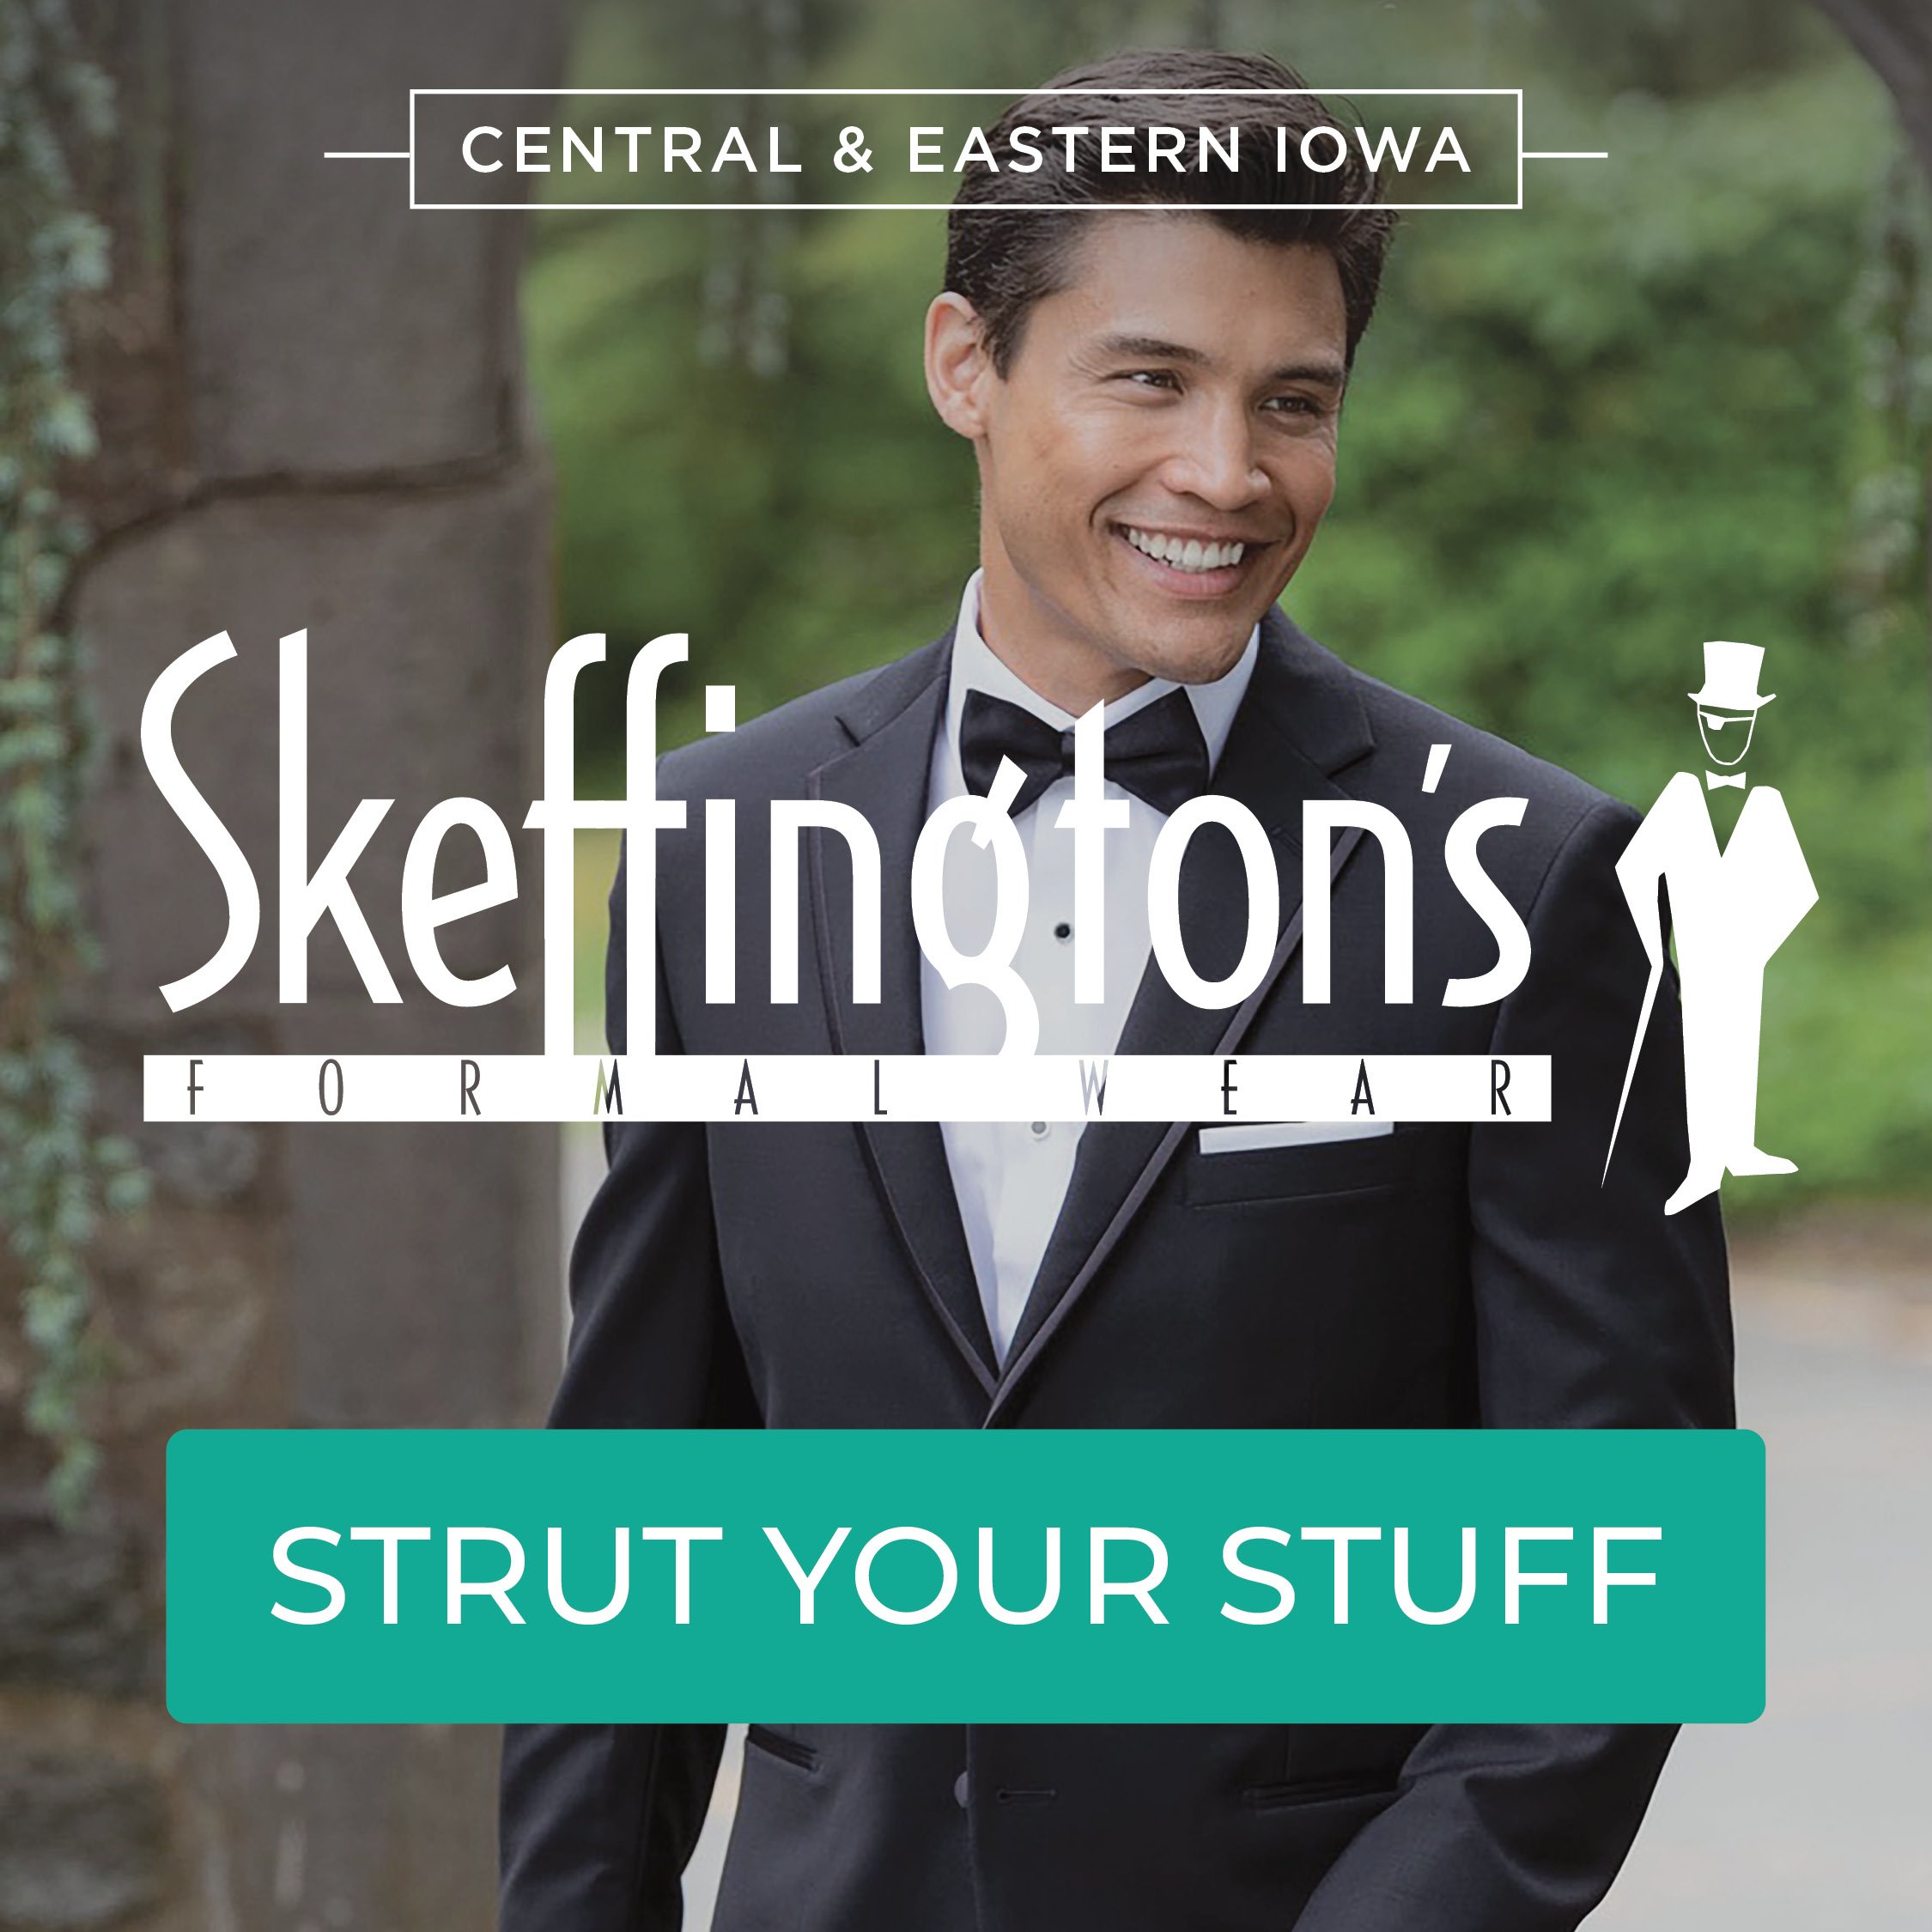 Skeffington's Formal Wear